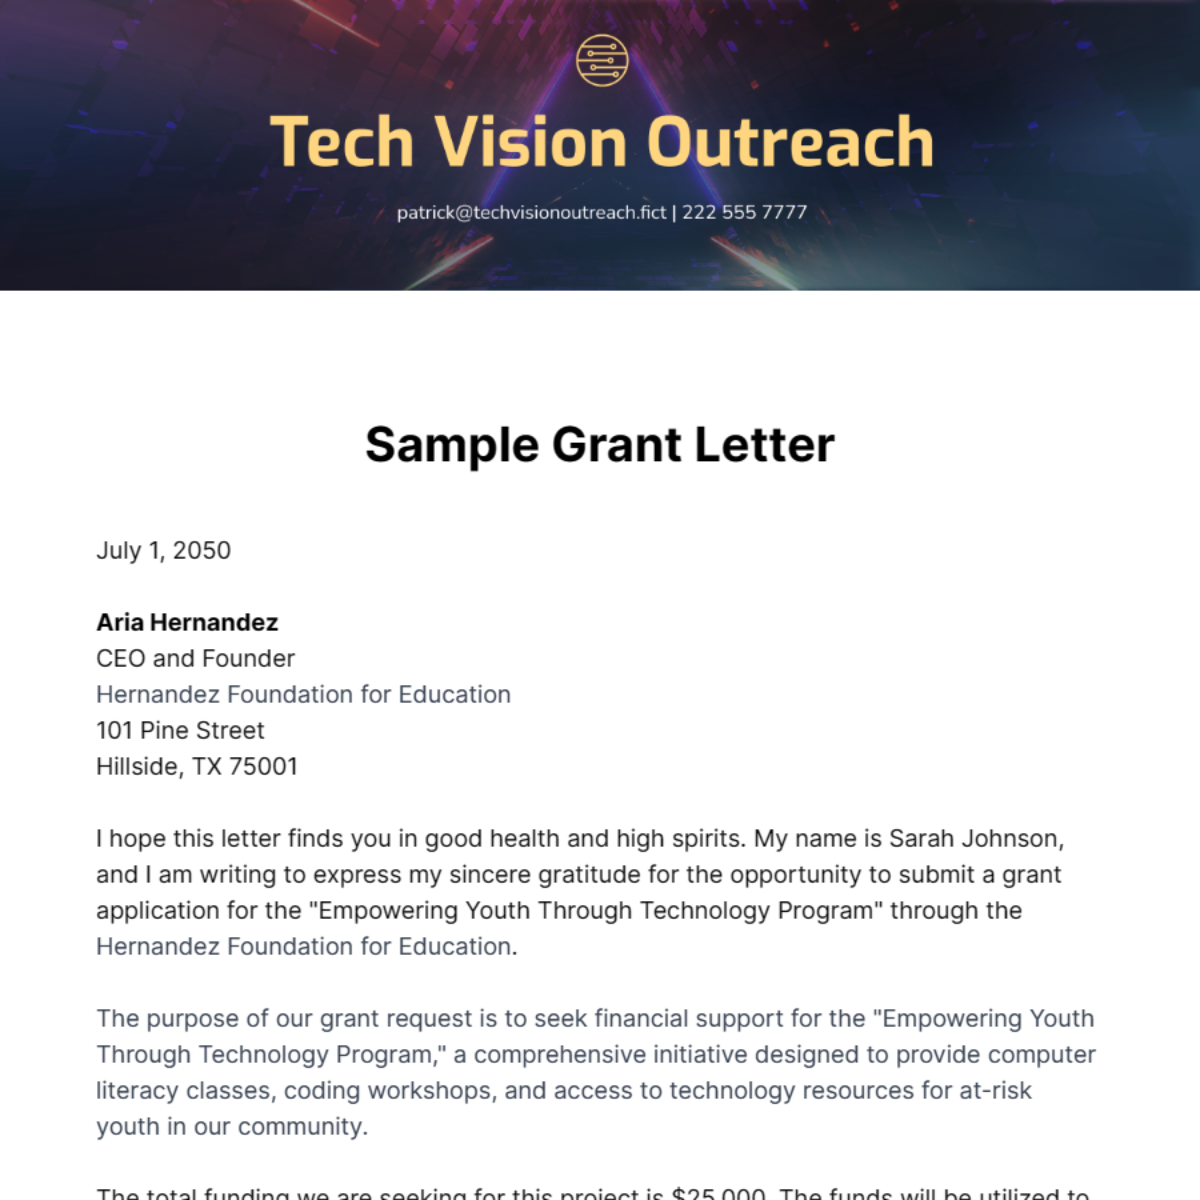 Sample Grant Letter Template